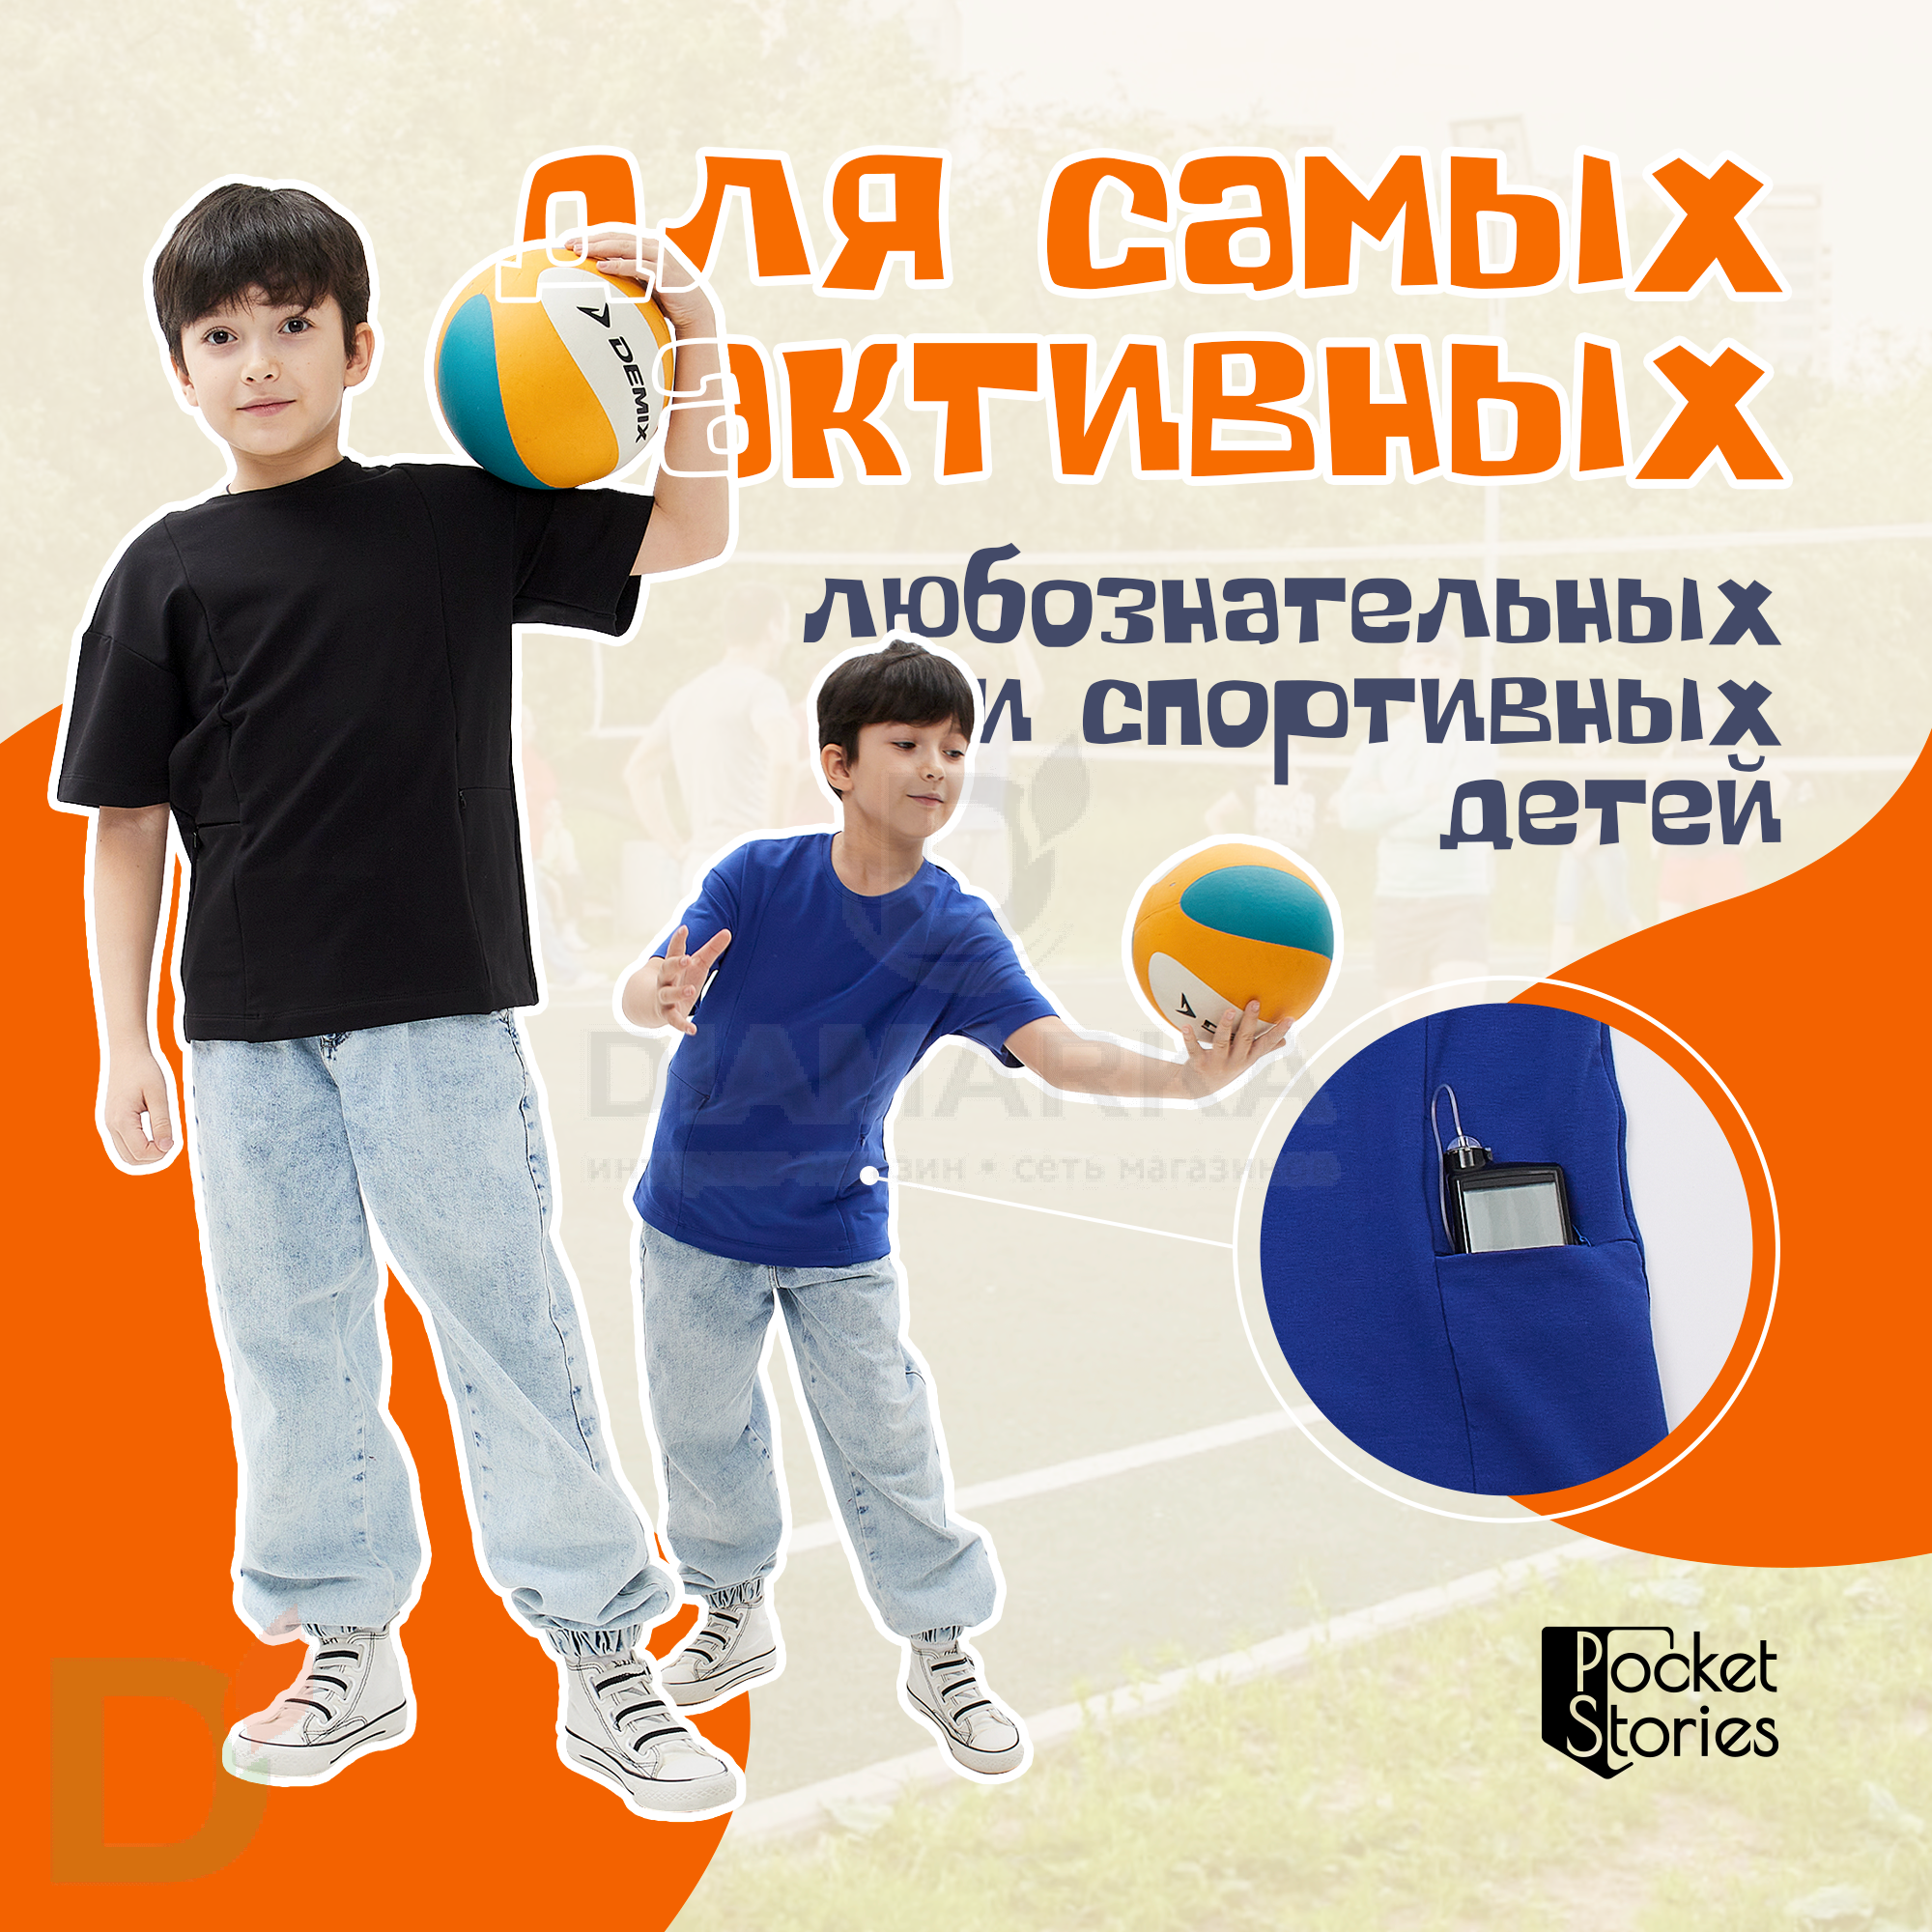 Футболка с накладным карманом для инсулиновой помпы Синяя, Premium